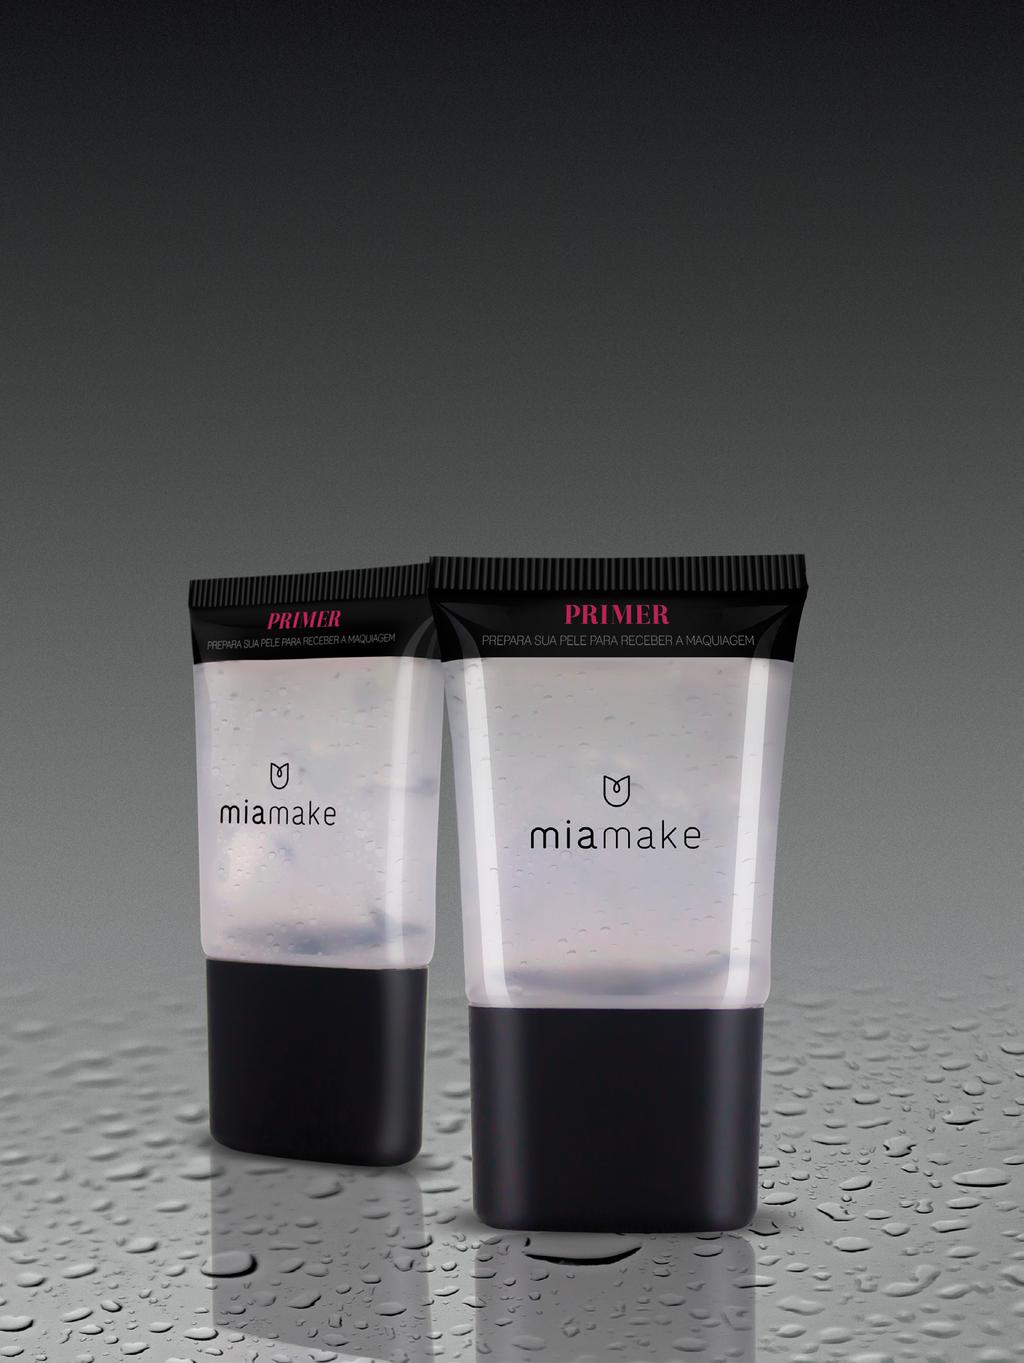 PRIMER Cod.: 11013 O Primer Mia Make é um gel incolor que prepara a pele, proporcionando uma boa aplicação e fixação para a maquiagem.